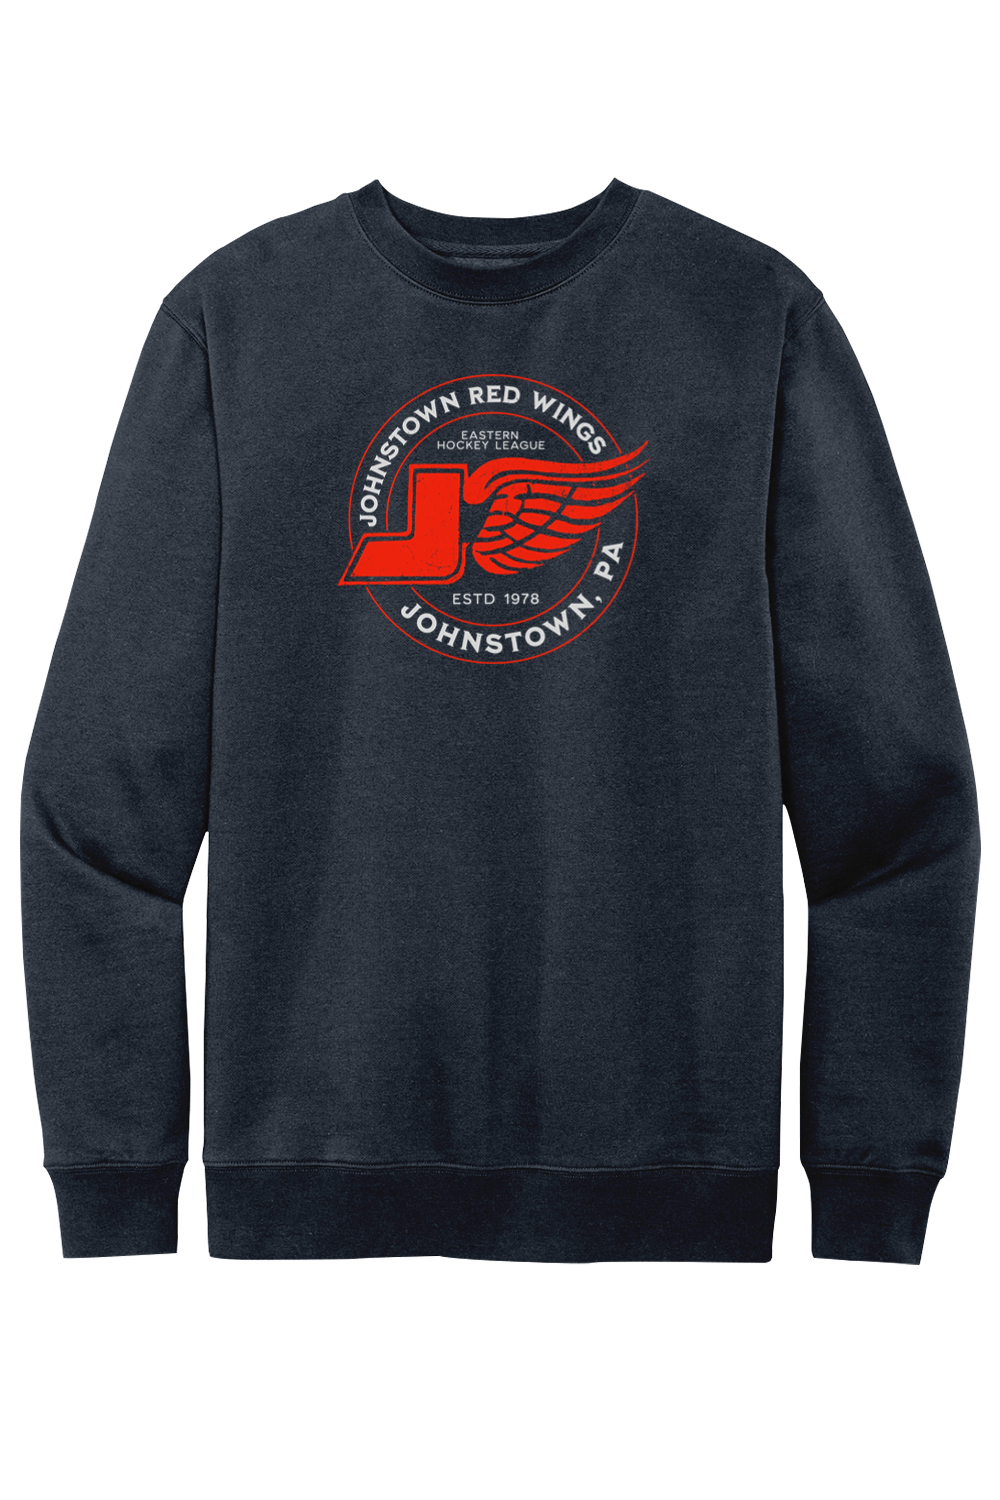 Johnstown Red Wings Hockey - Fleece Crewneck Sweatshirt - Yinzylvania